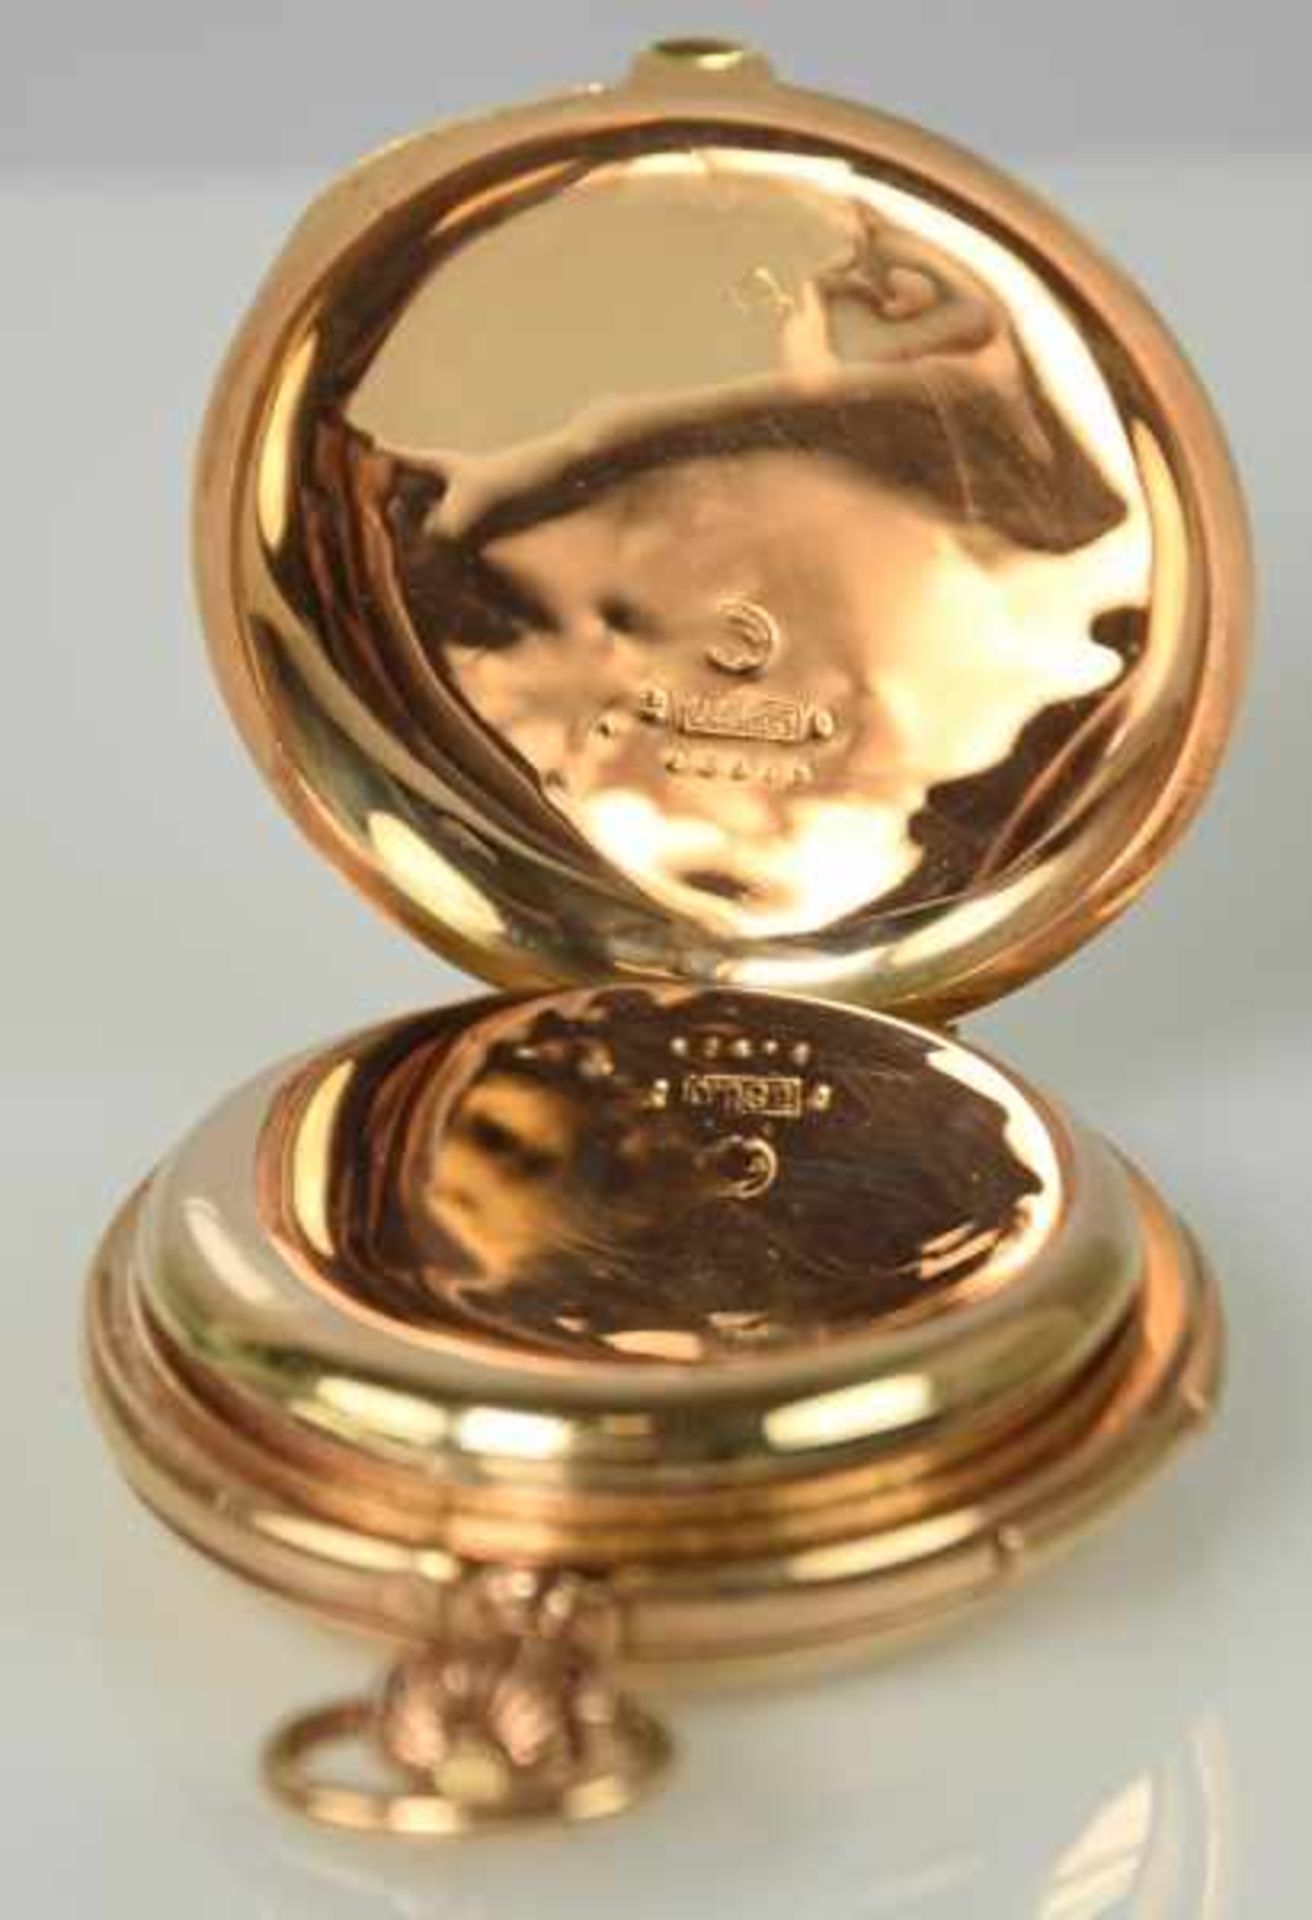 SAVONETTE Goldgehäuse 14ct mit polierten Deckeln, Gold-Zwischendeckel, Emailziffernblatt mit - Image 4 of 4